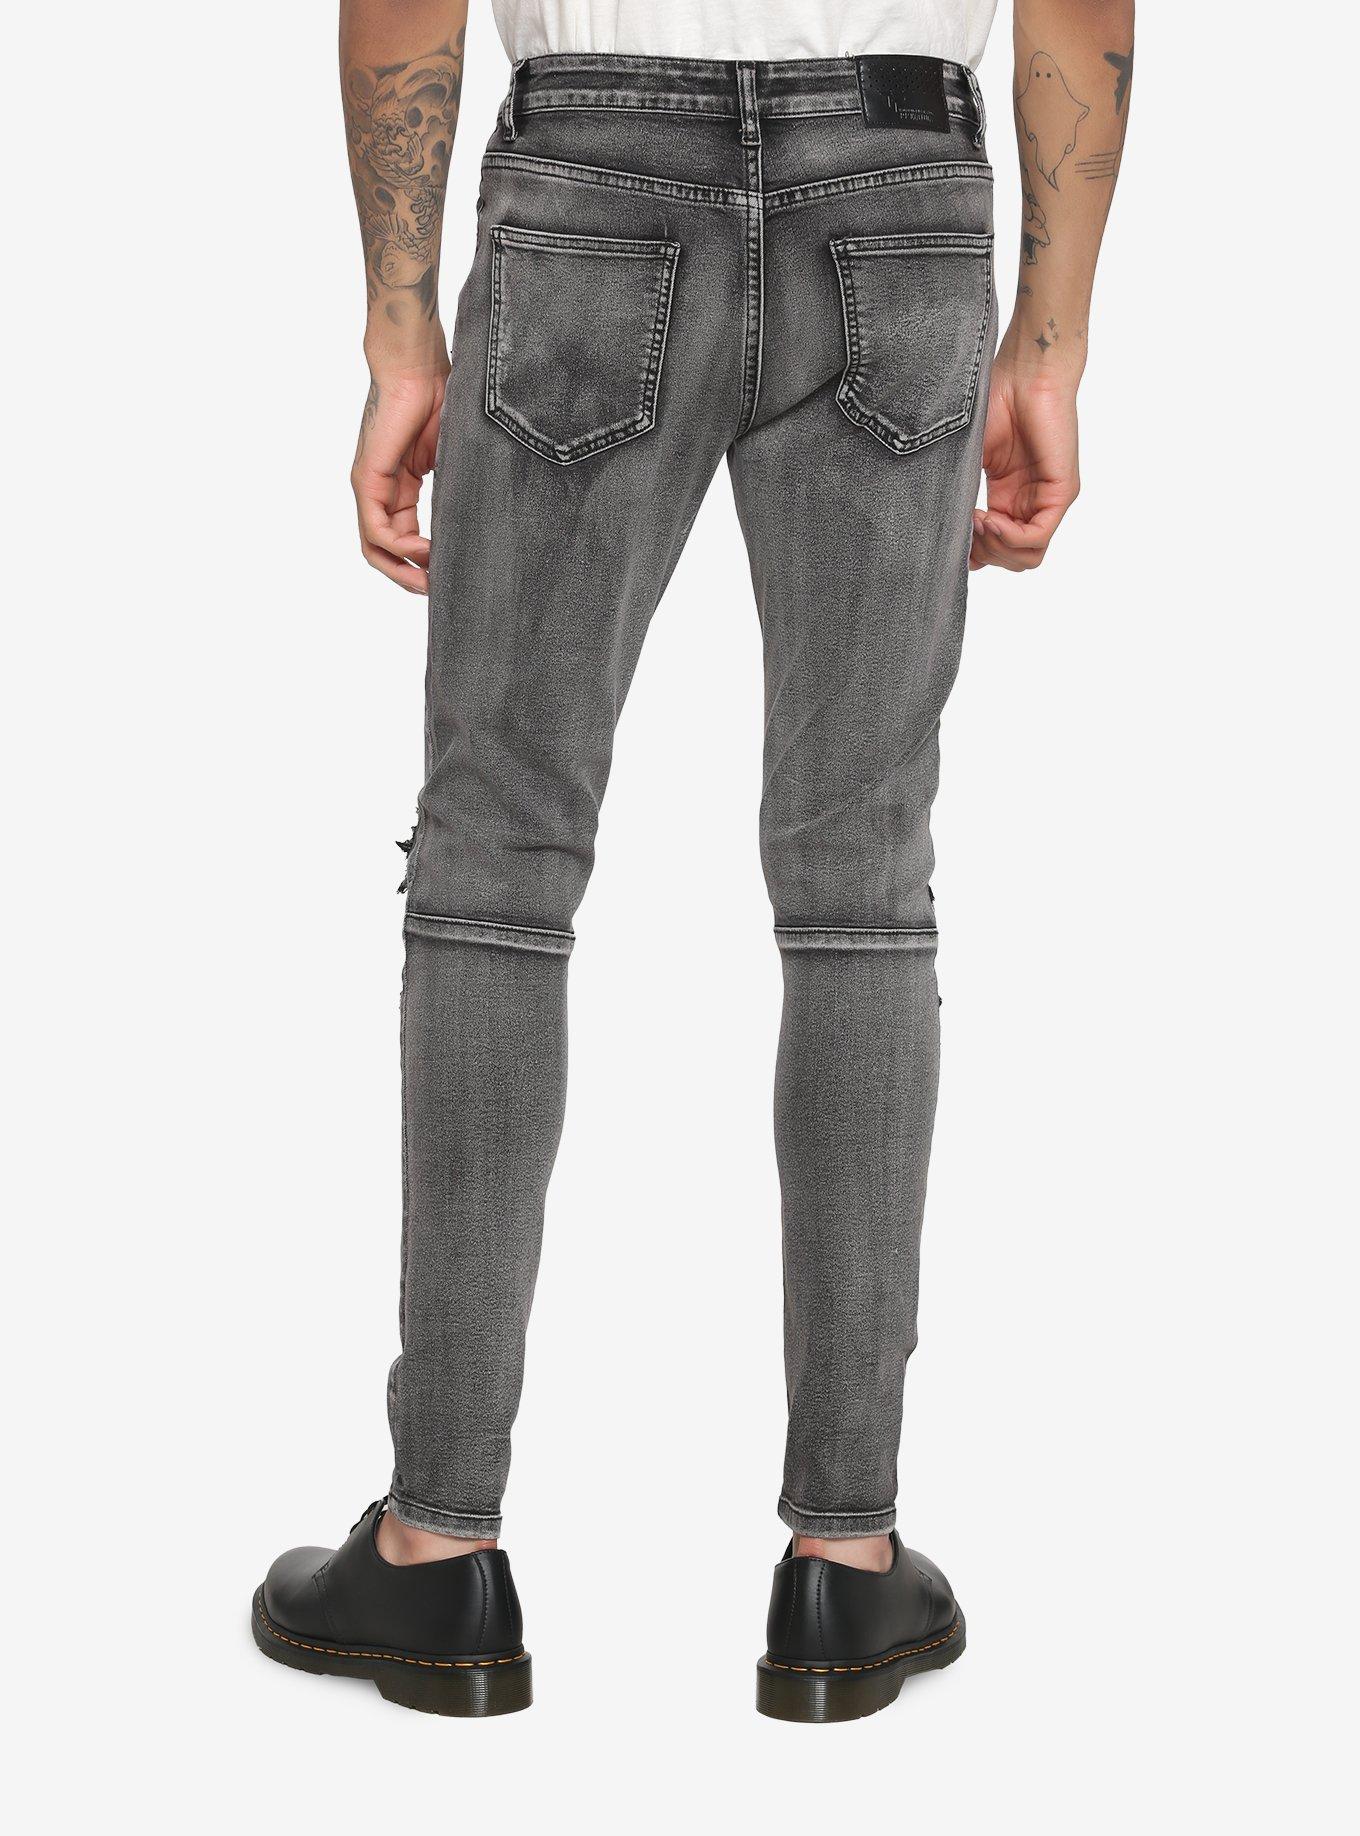 Grey Wash Destructed Skinny Jeans, BLACK  GREY, alternate